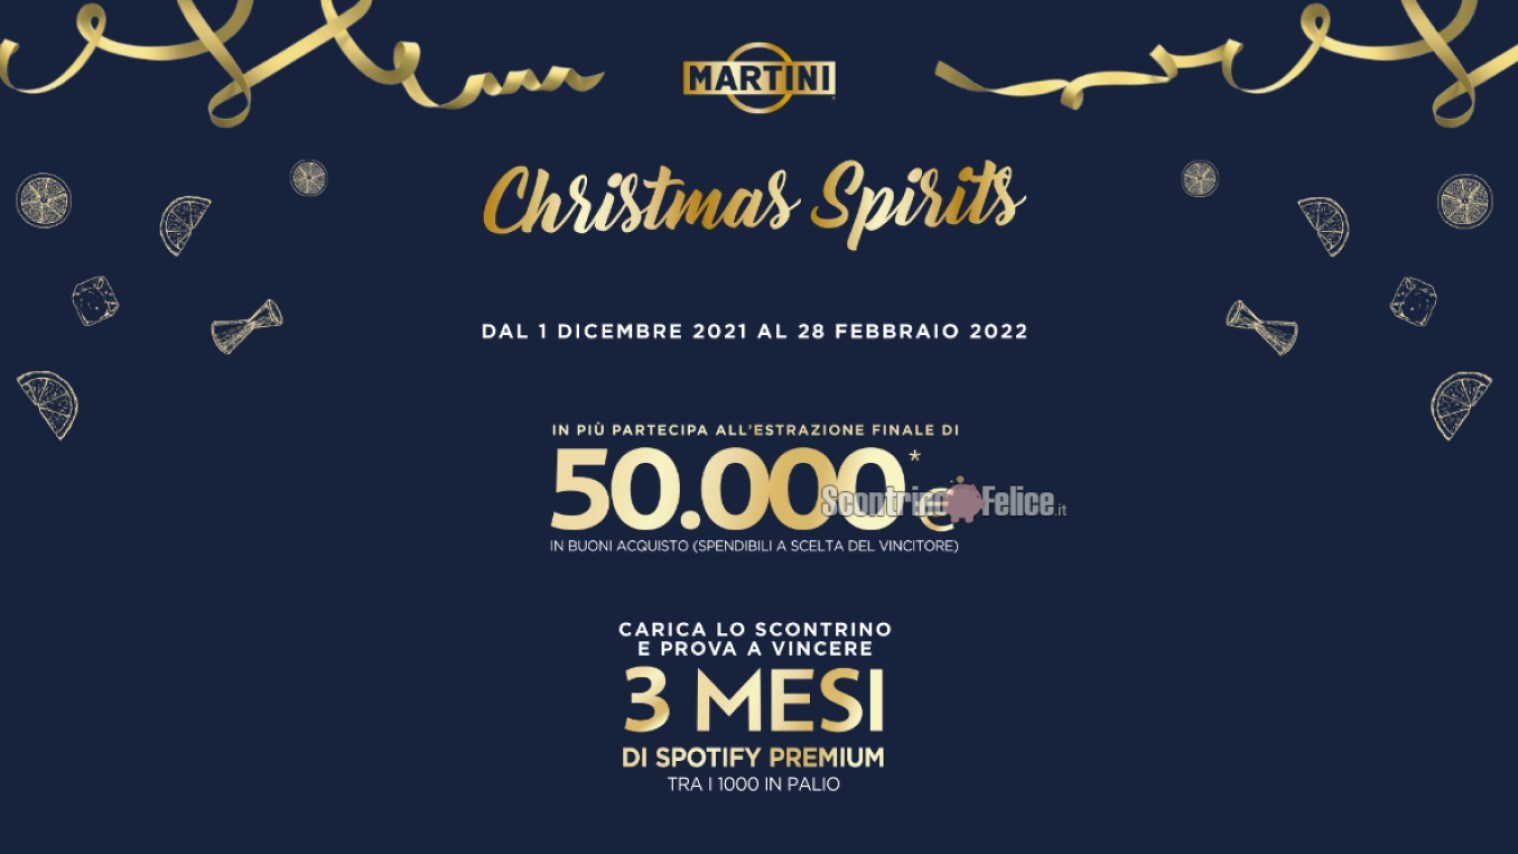 Concorso Martini “Christmas Spirits”: in palio 1000 abbonamenti Spotify Premium e un buono spesa da 50.000 Euro!